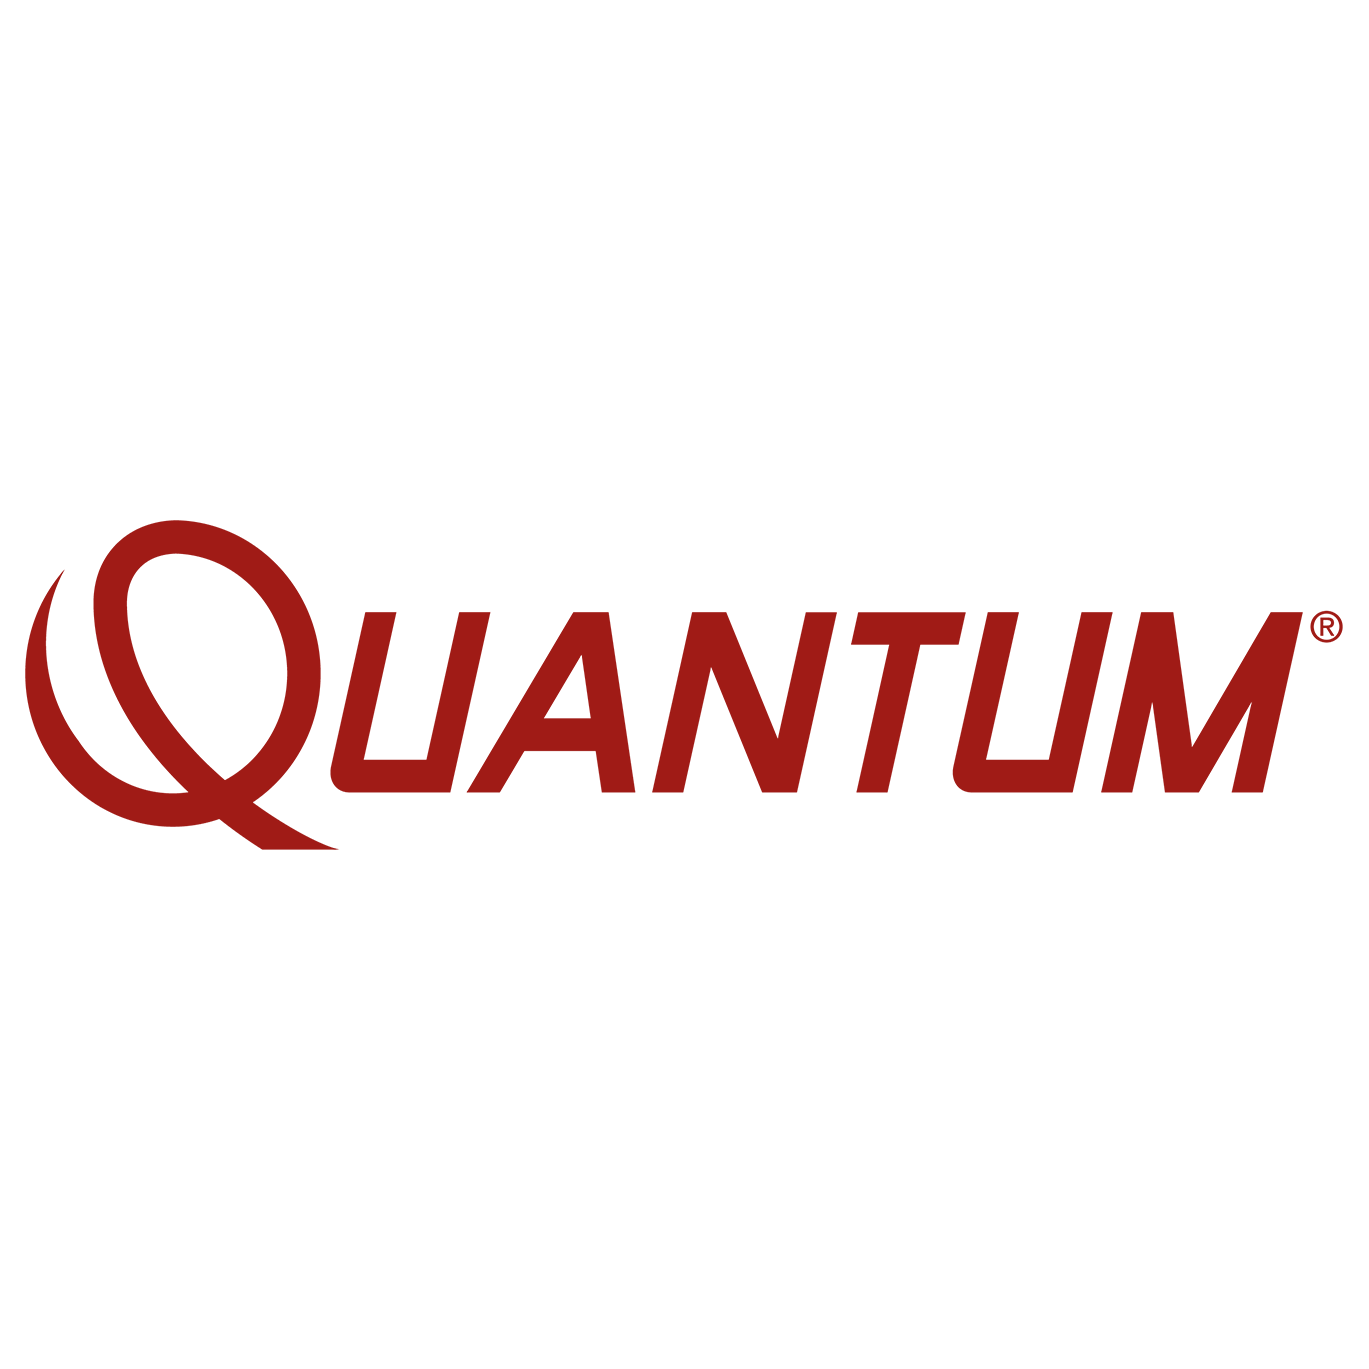 quantum logo